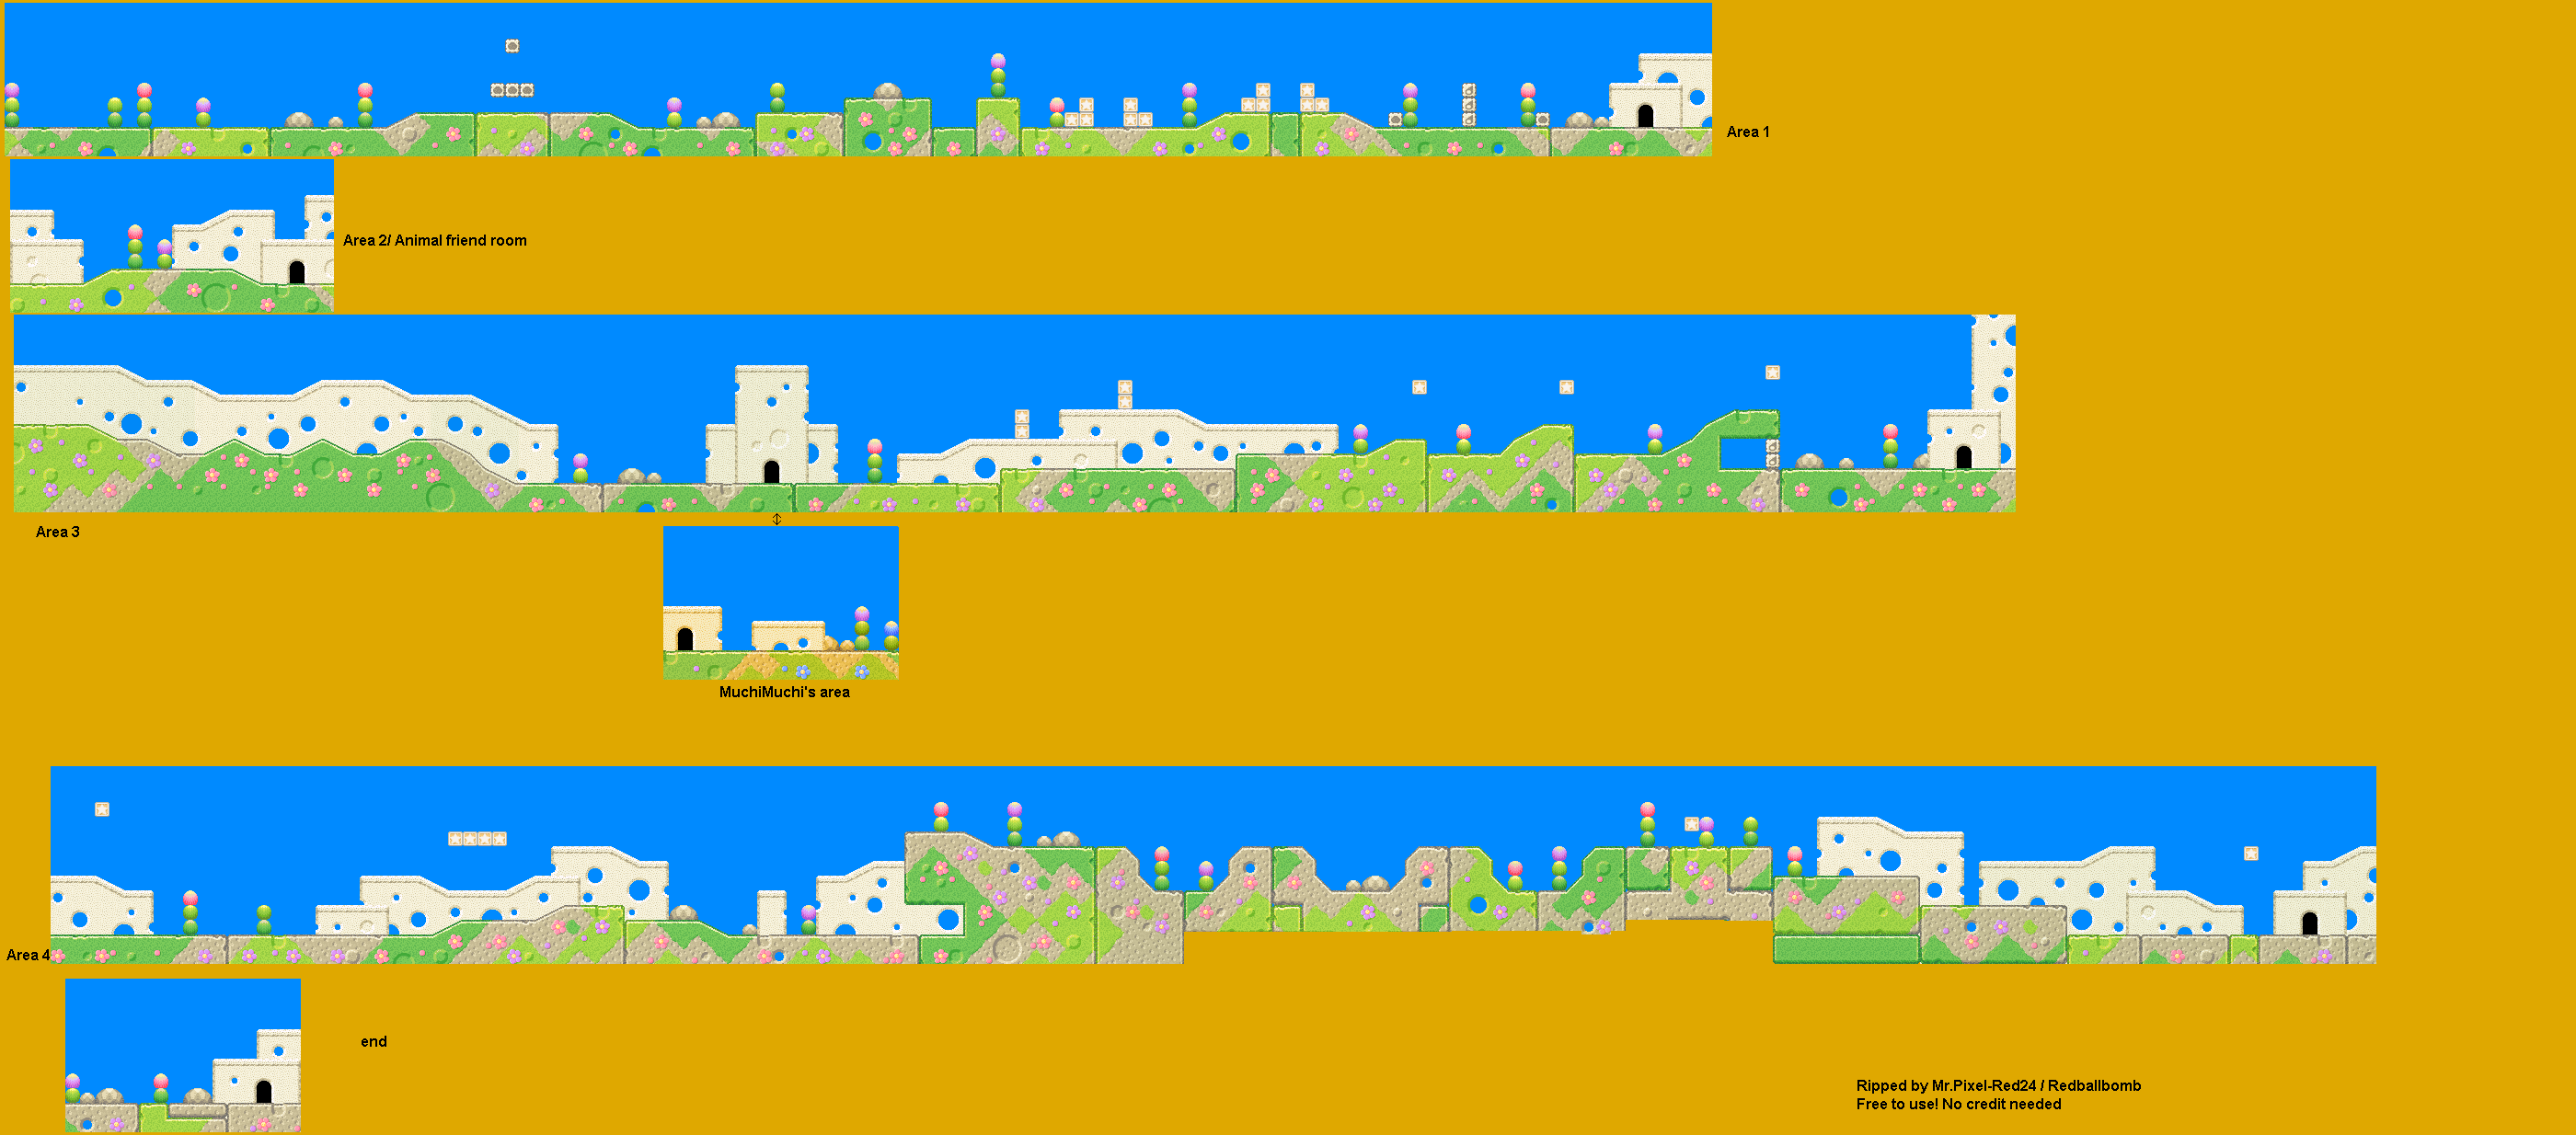 Kirby's Dream Land 3 - Grass Land 2